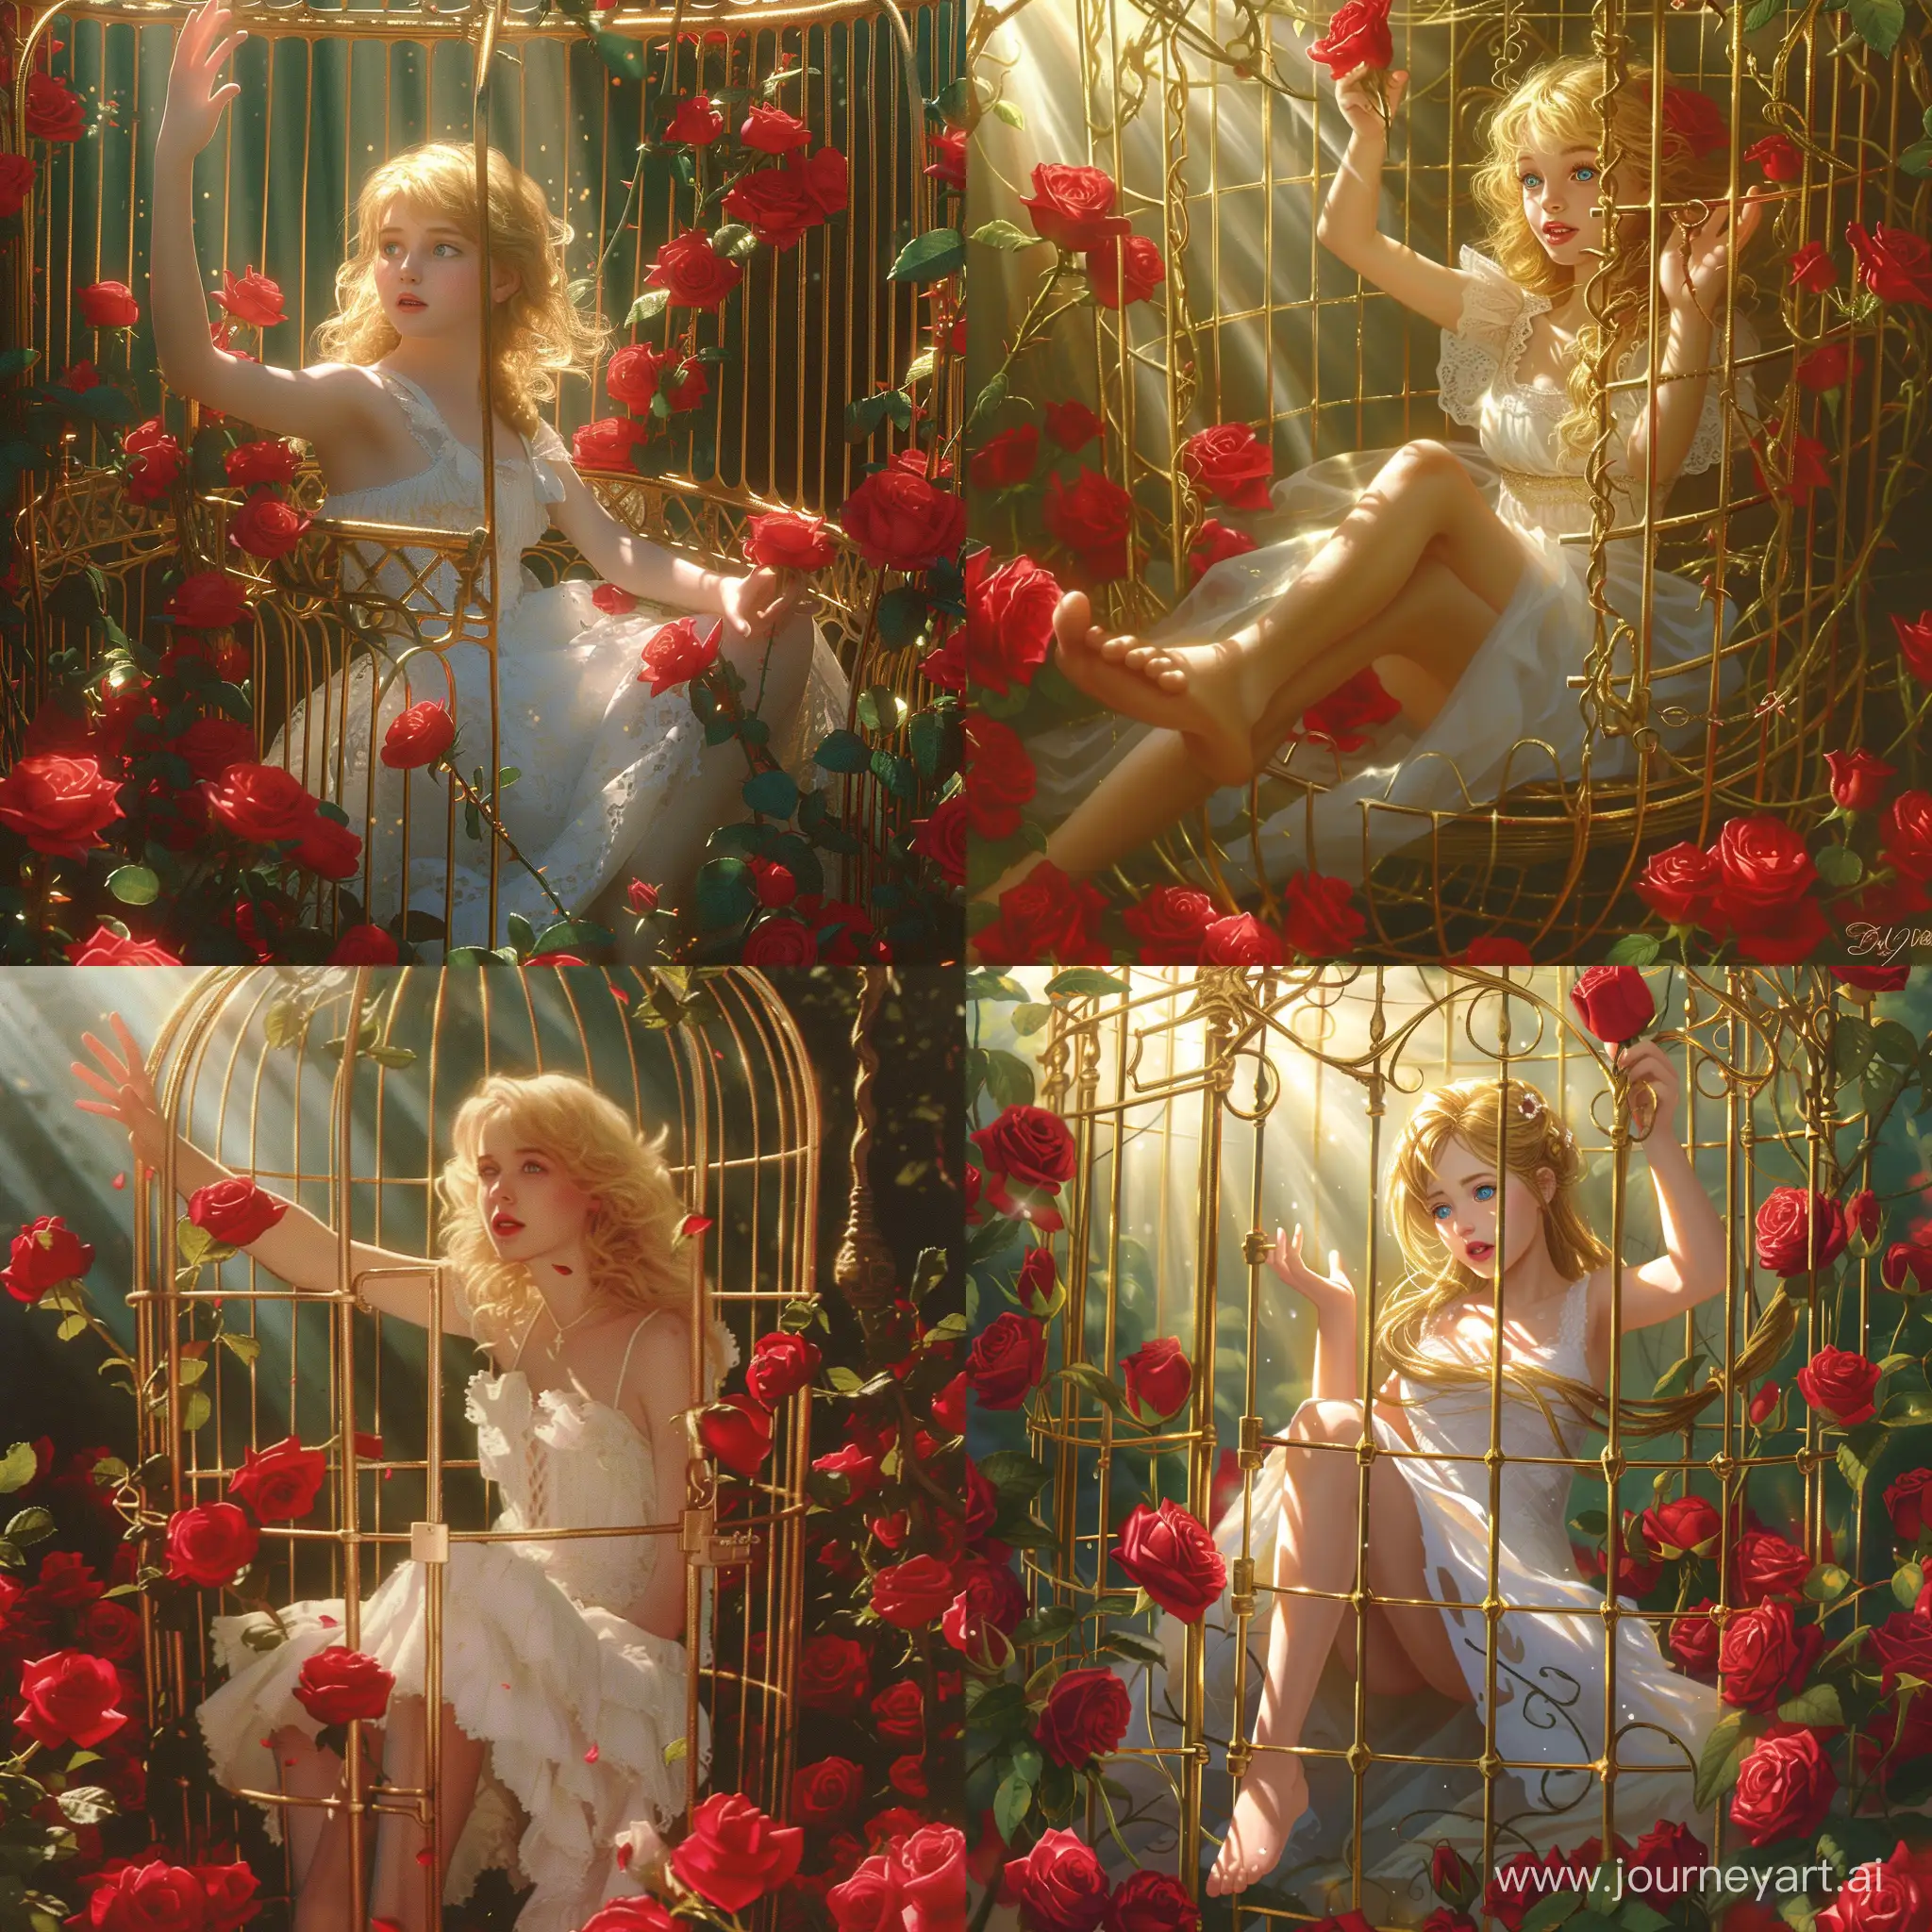 Девушка босая, в белом платье, с золотыми волосами, голубыми глазами сидит внутри золотой клетки которая окружена красными розами, одной рукой девушка тянется к солнцу лучи которого падают на нее и клетку, другая рука держит розу
